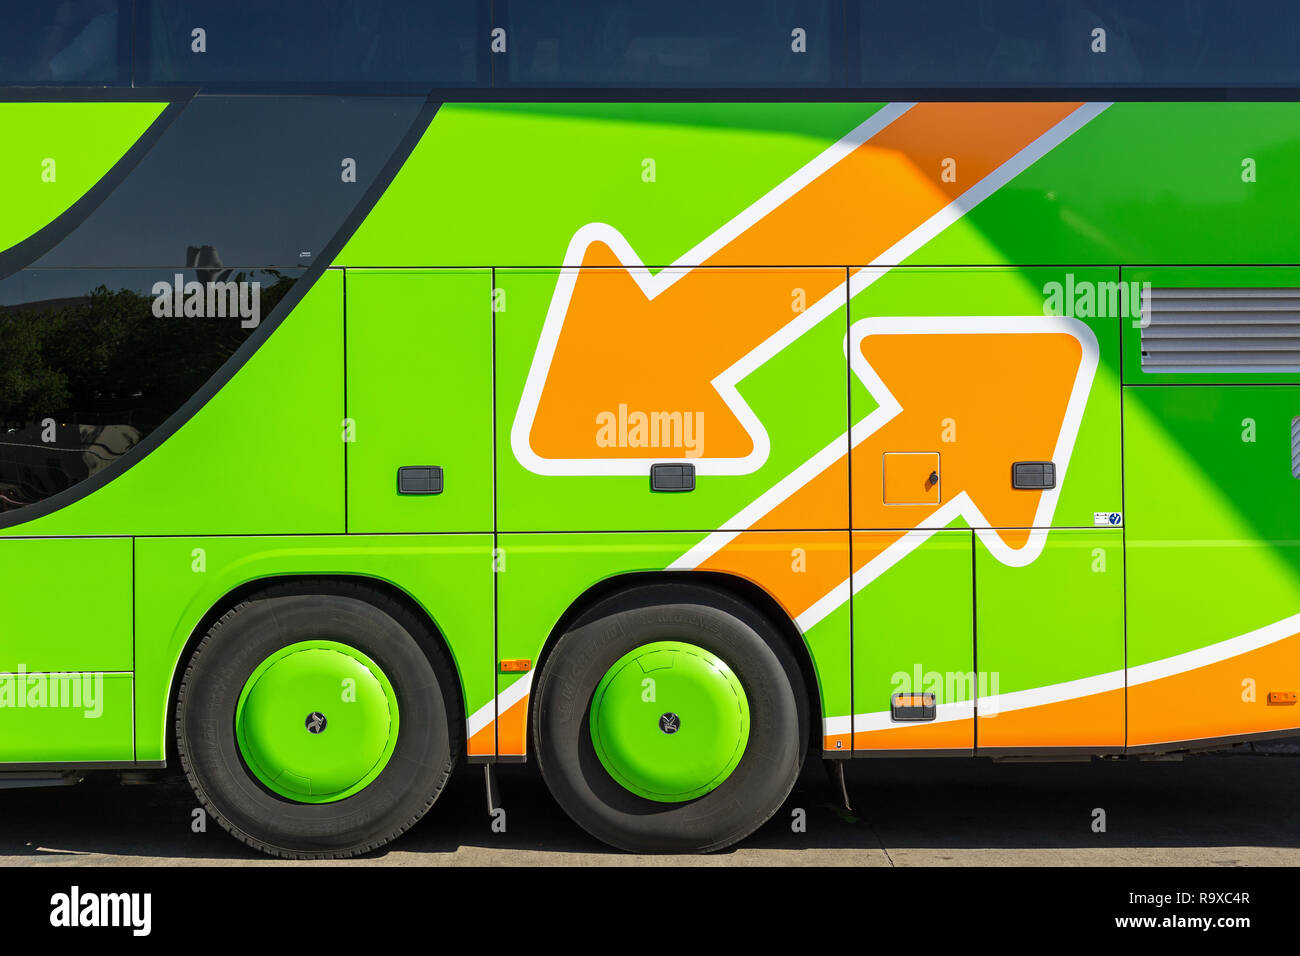 08.05.2018, Berlin, Deutschland - Bus des Fernbusunternehmens Flixbus am Zentralen Omnibusbahnhof Berlin. 0MC180508D417CARO [MODEL RELEASE: NOT APPLIC Stock Photo